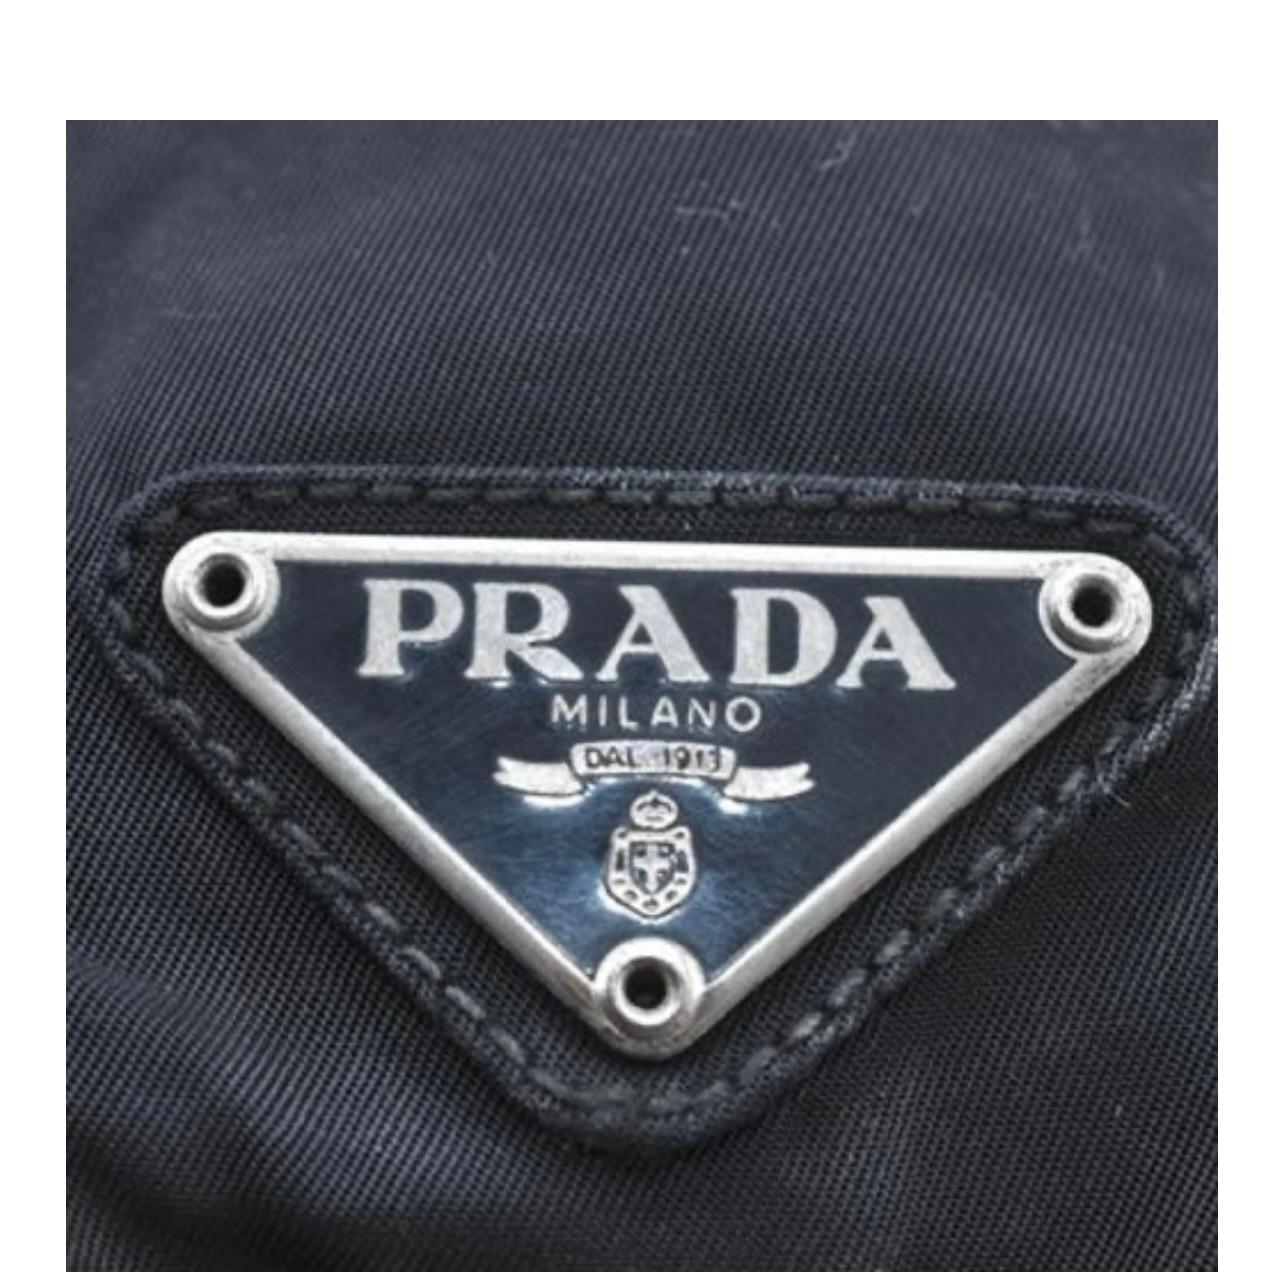 prada serial number inside bag